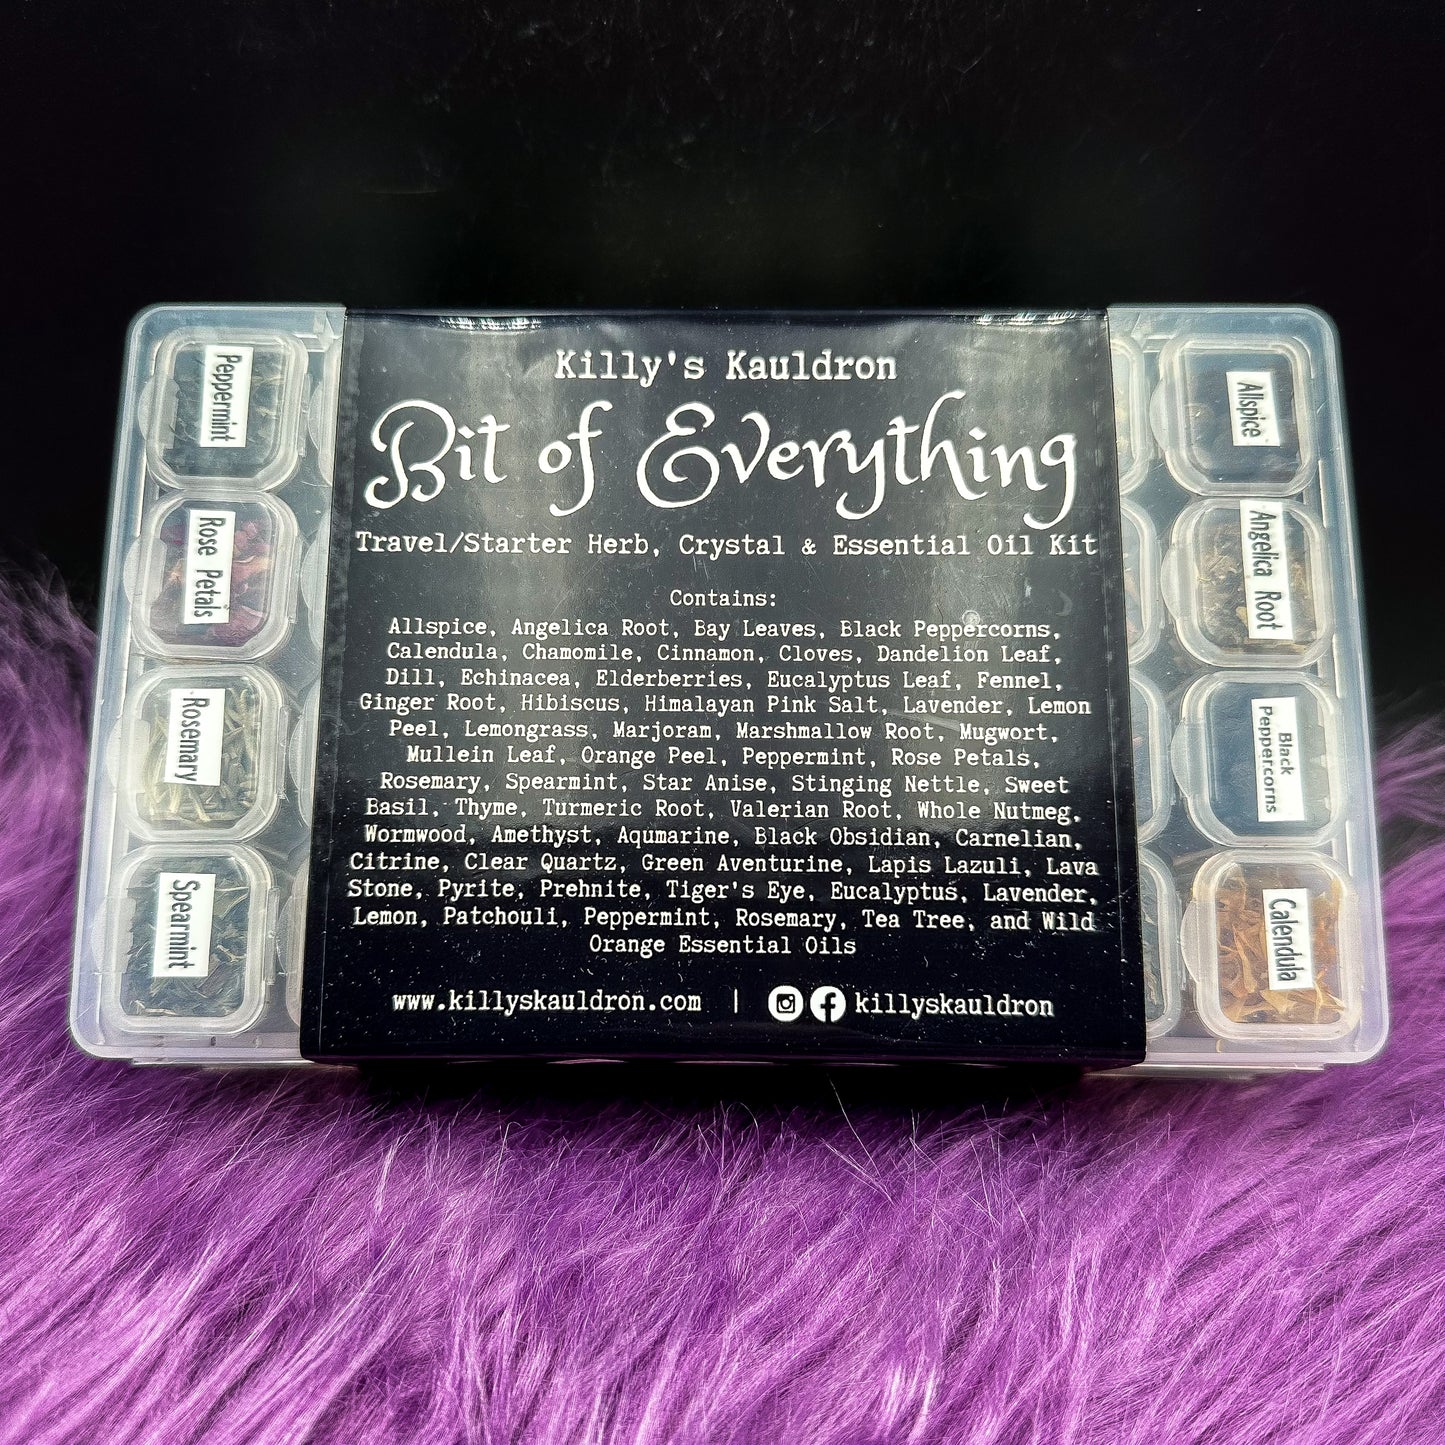 “Bit of Everything” Travel/Starter Herb & Crystal Kit